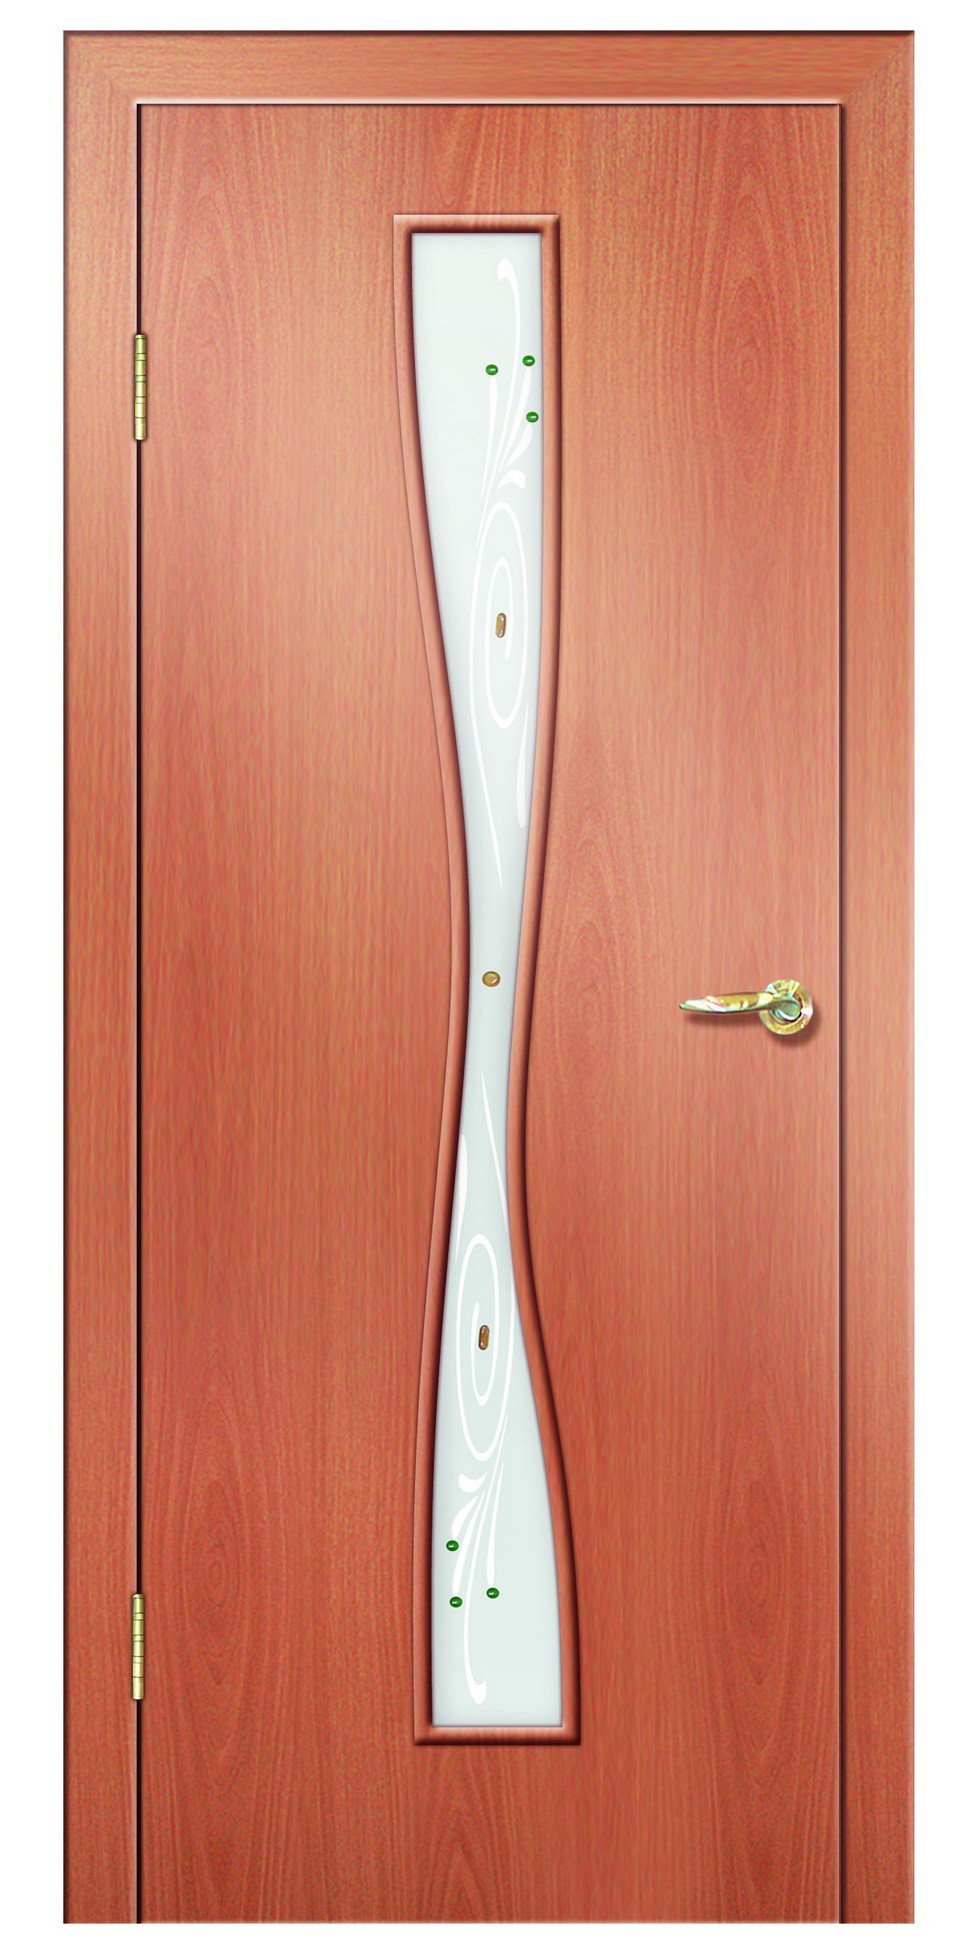 Дверная Линия Межкомнатная дверь ПО-24 Фьюзинг, арт. 15725 - фото №2